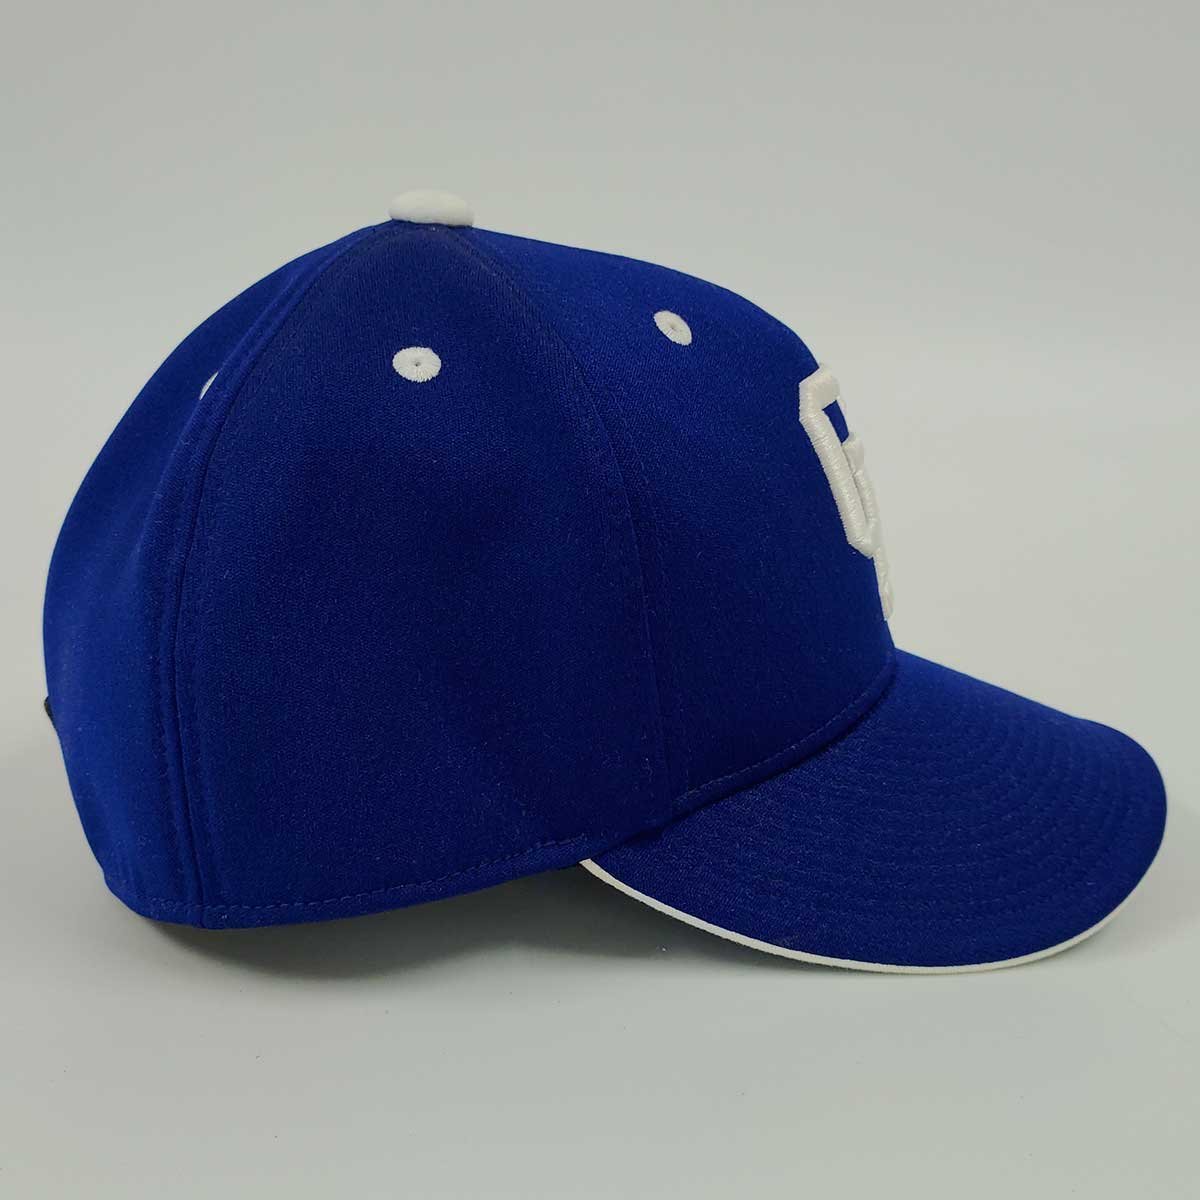 ミズノプロ 中日ドラゴンズ プロモデル 帽子 キャップ 60cm メンズ MIZUNO PRO NPB プロ野球